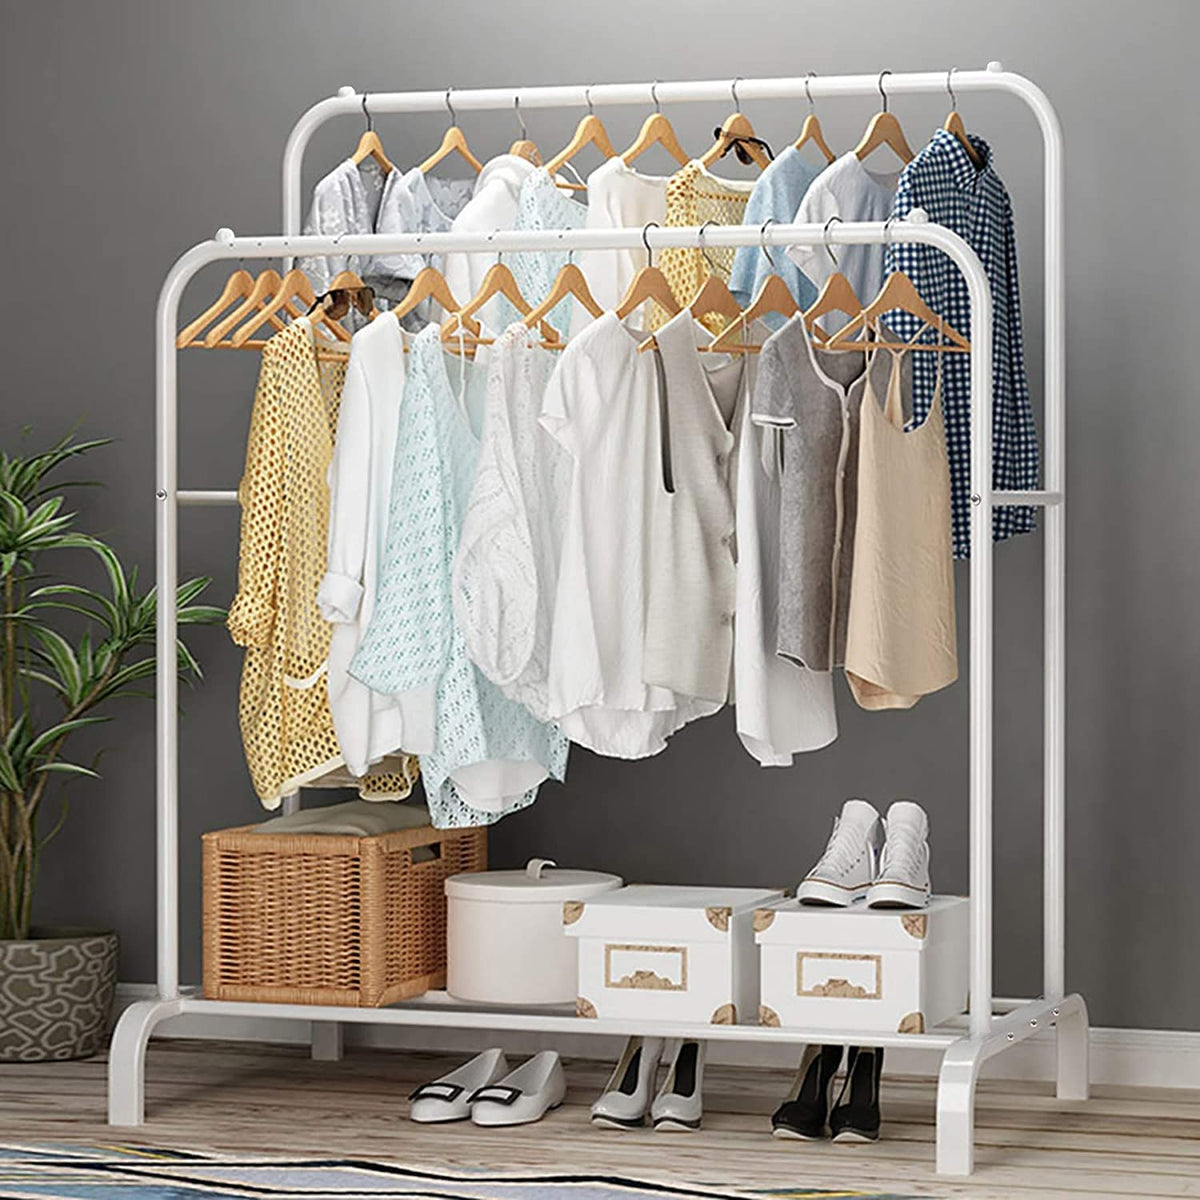 KriShyam®  Double Pole Hanger Garment Rack Freestanding Hanger Double Rods Multi-Functional Bedroom Clothing Rack (Hanger) White